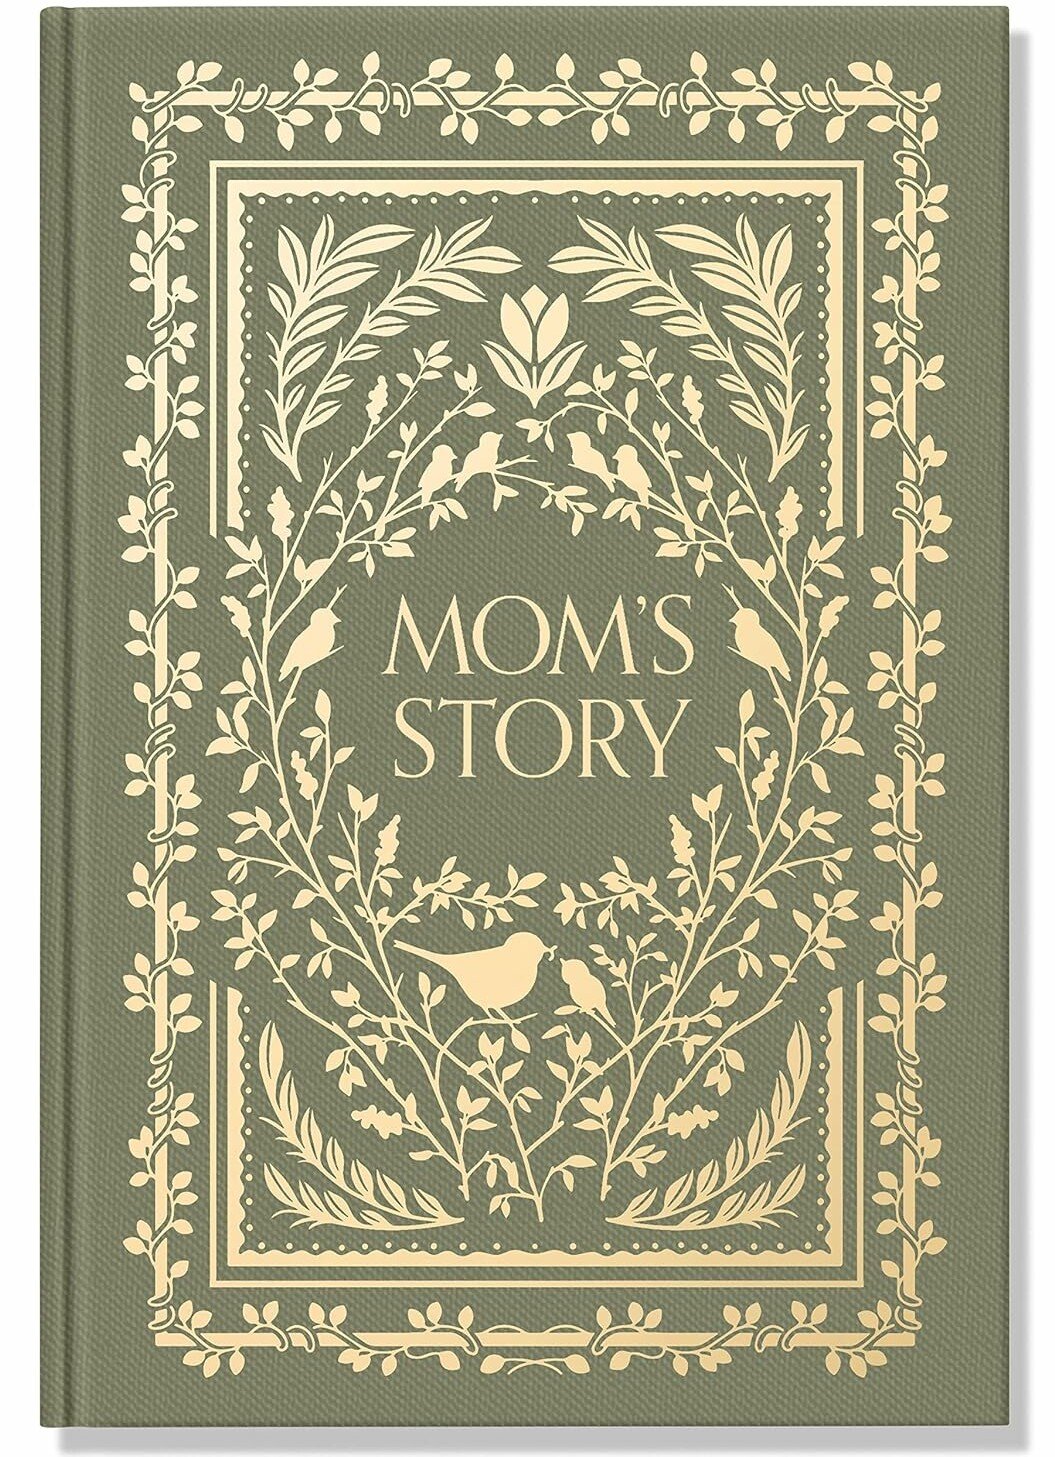 Mom's Story journal for moms